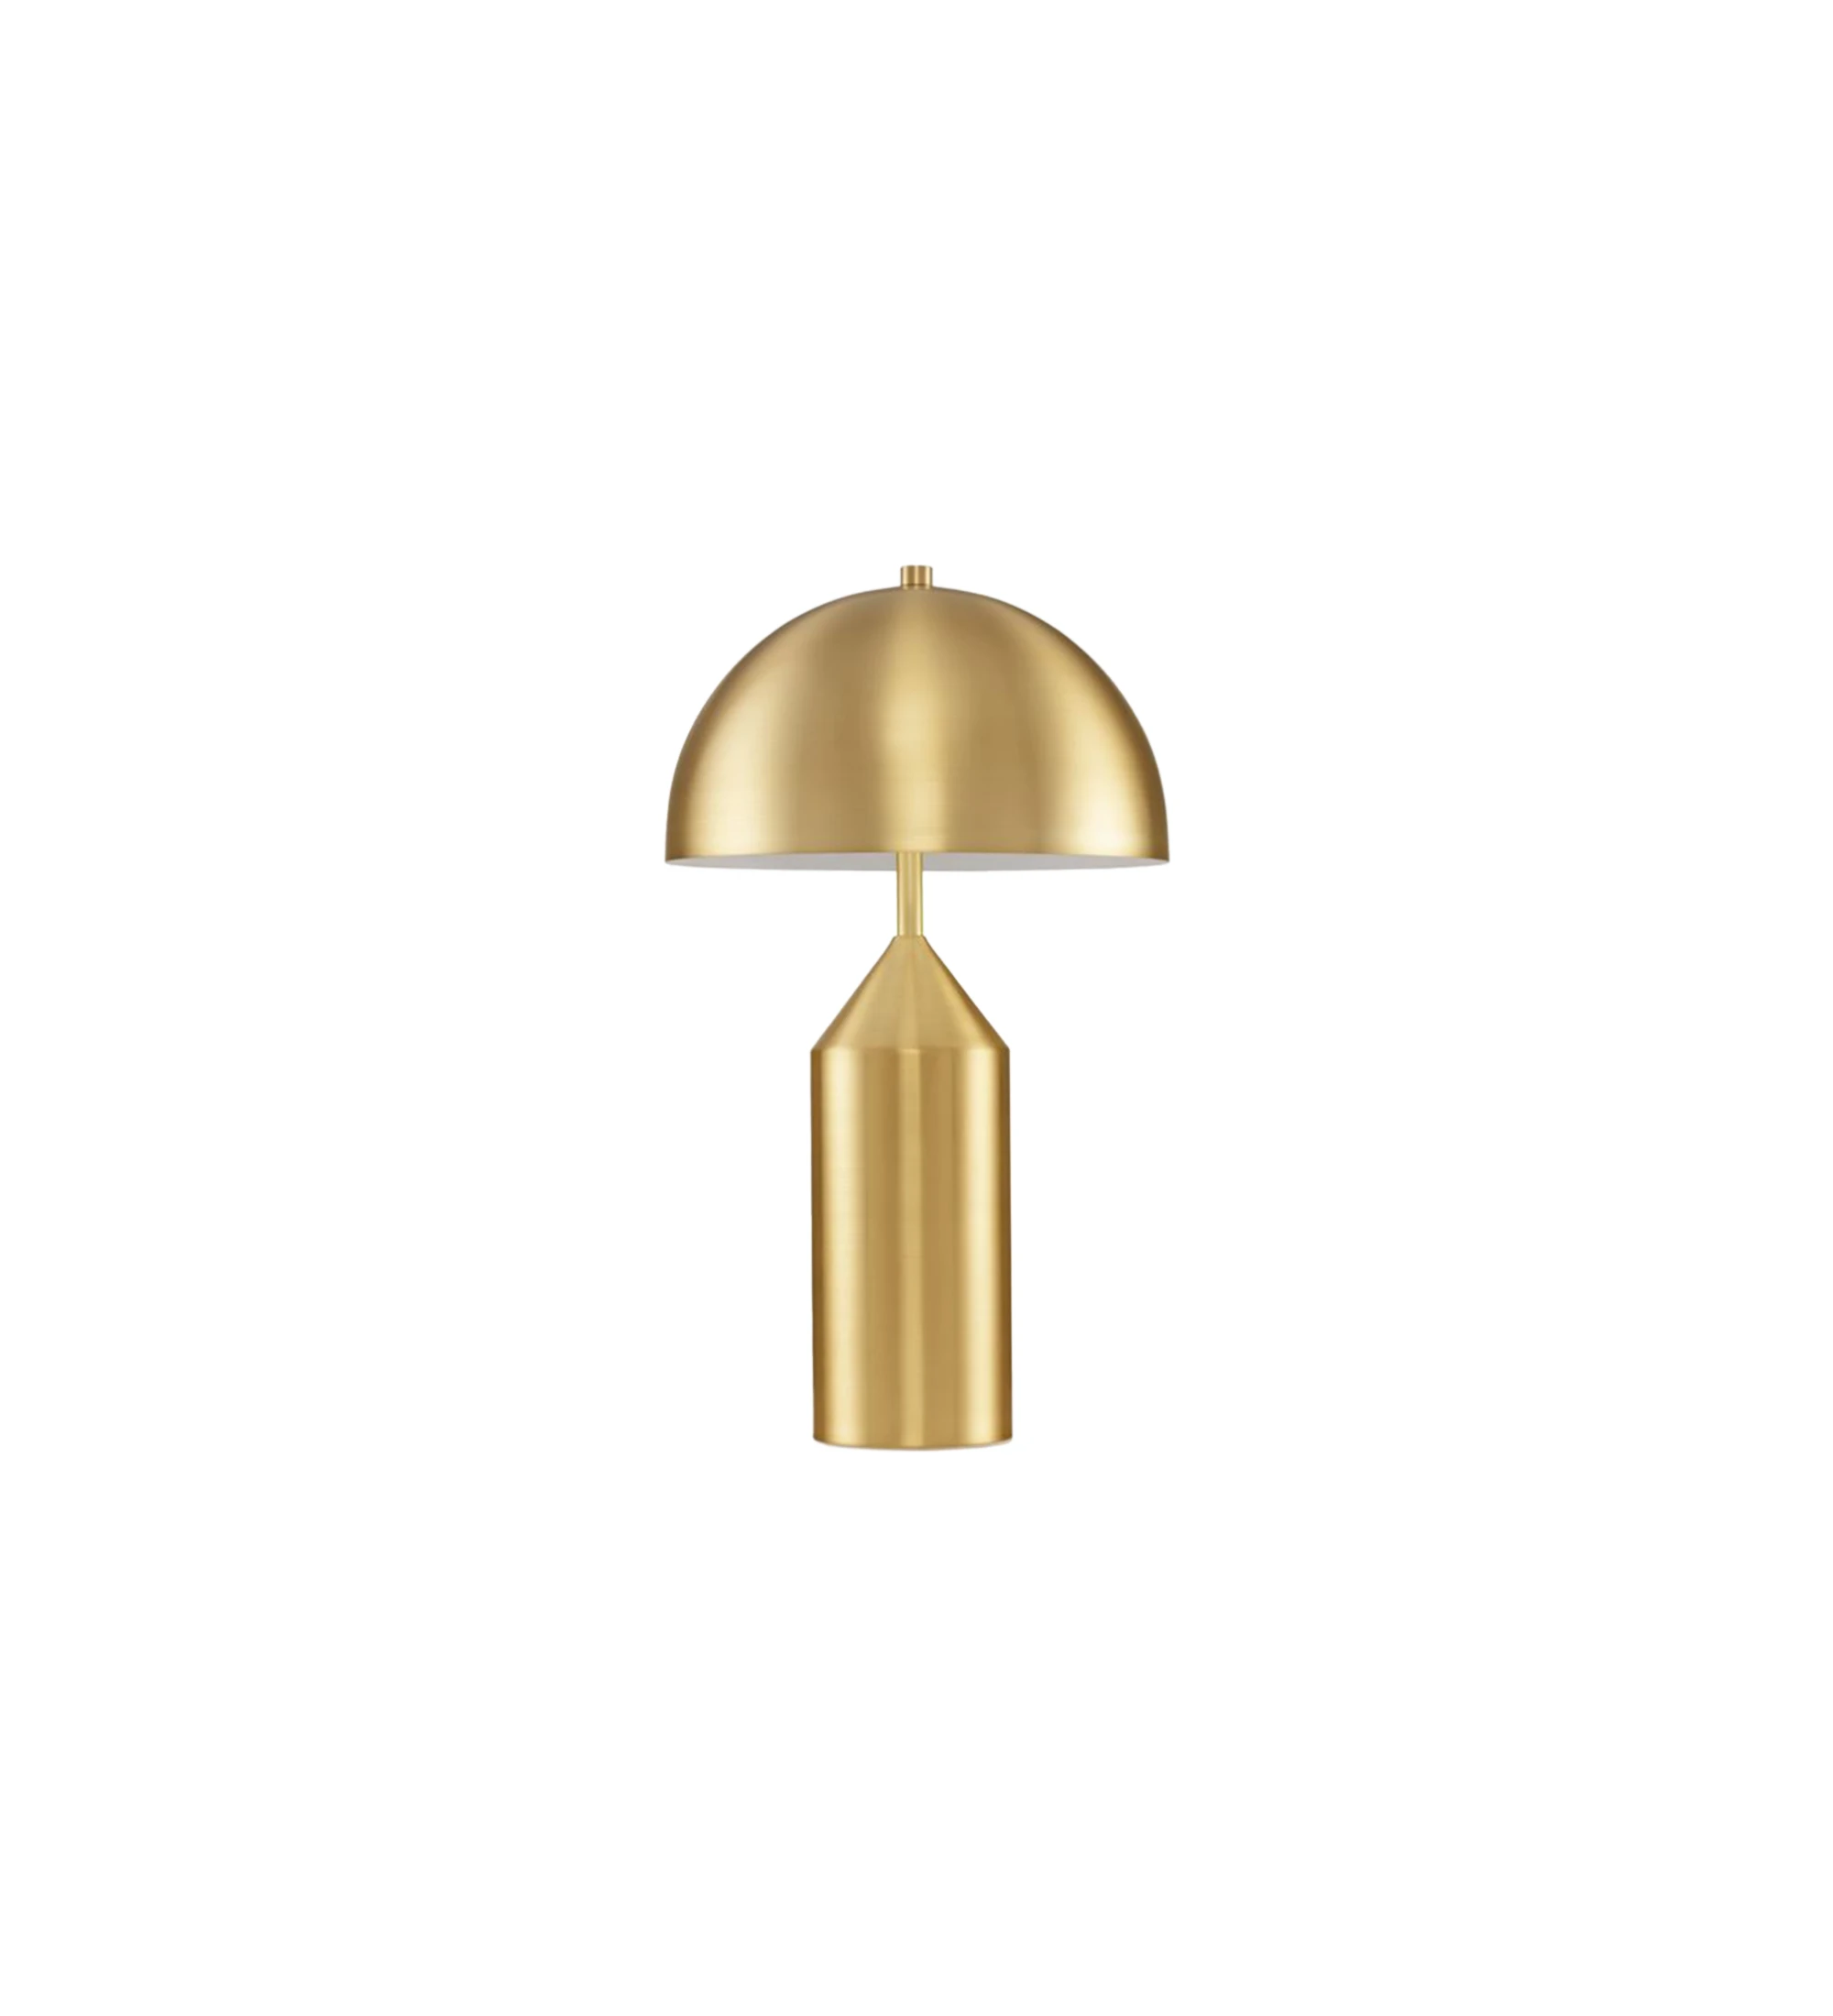 Lampe de table avec base en métal doré et abat-jour en laiton doré.